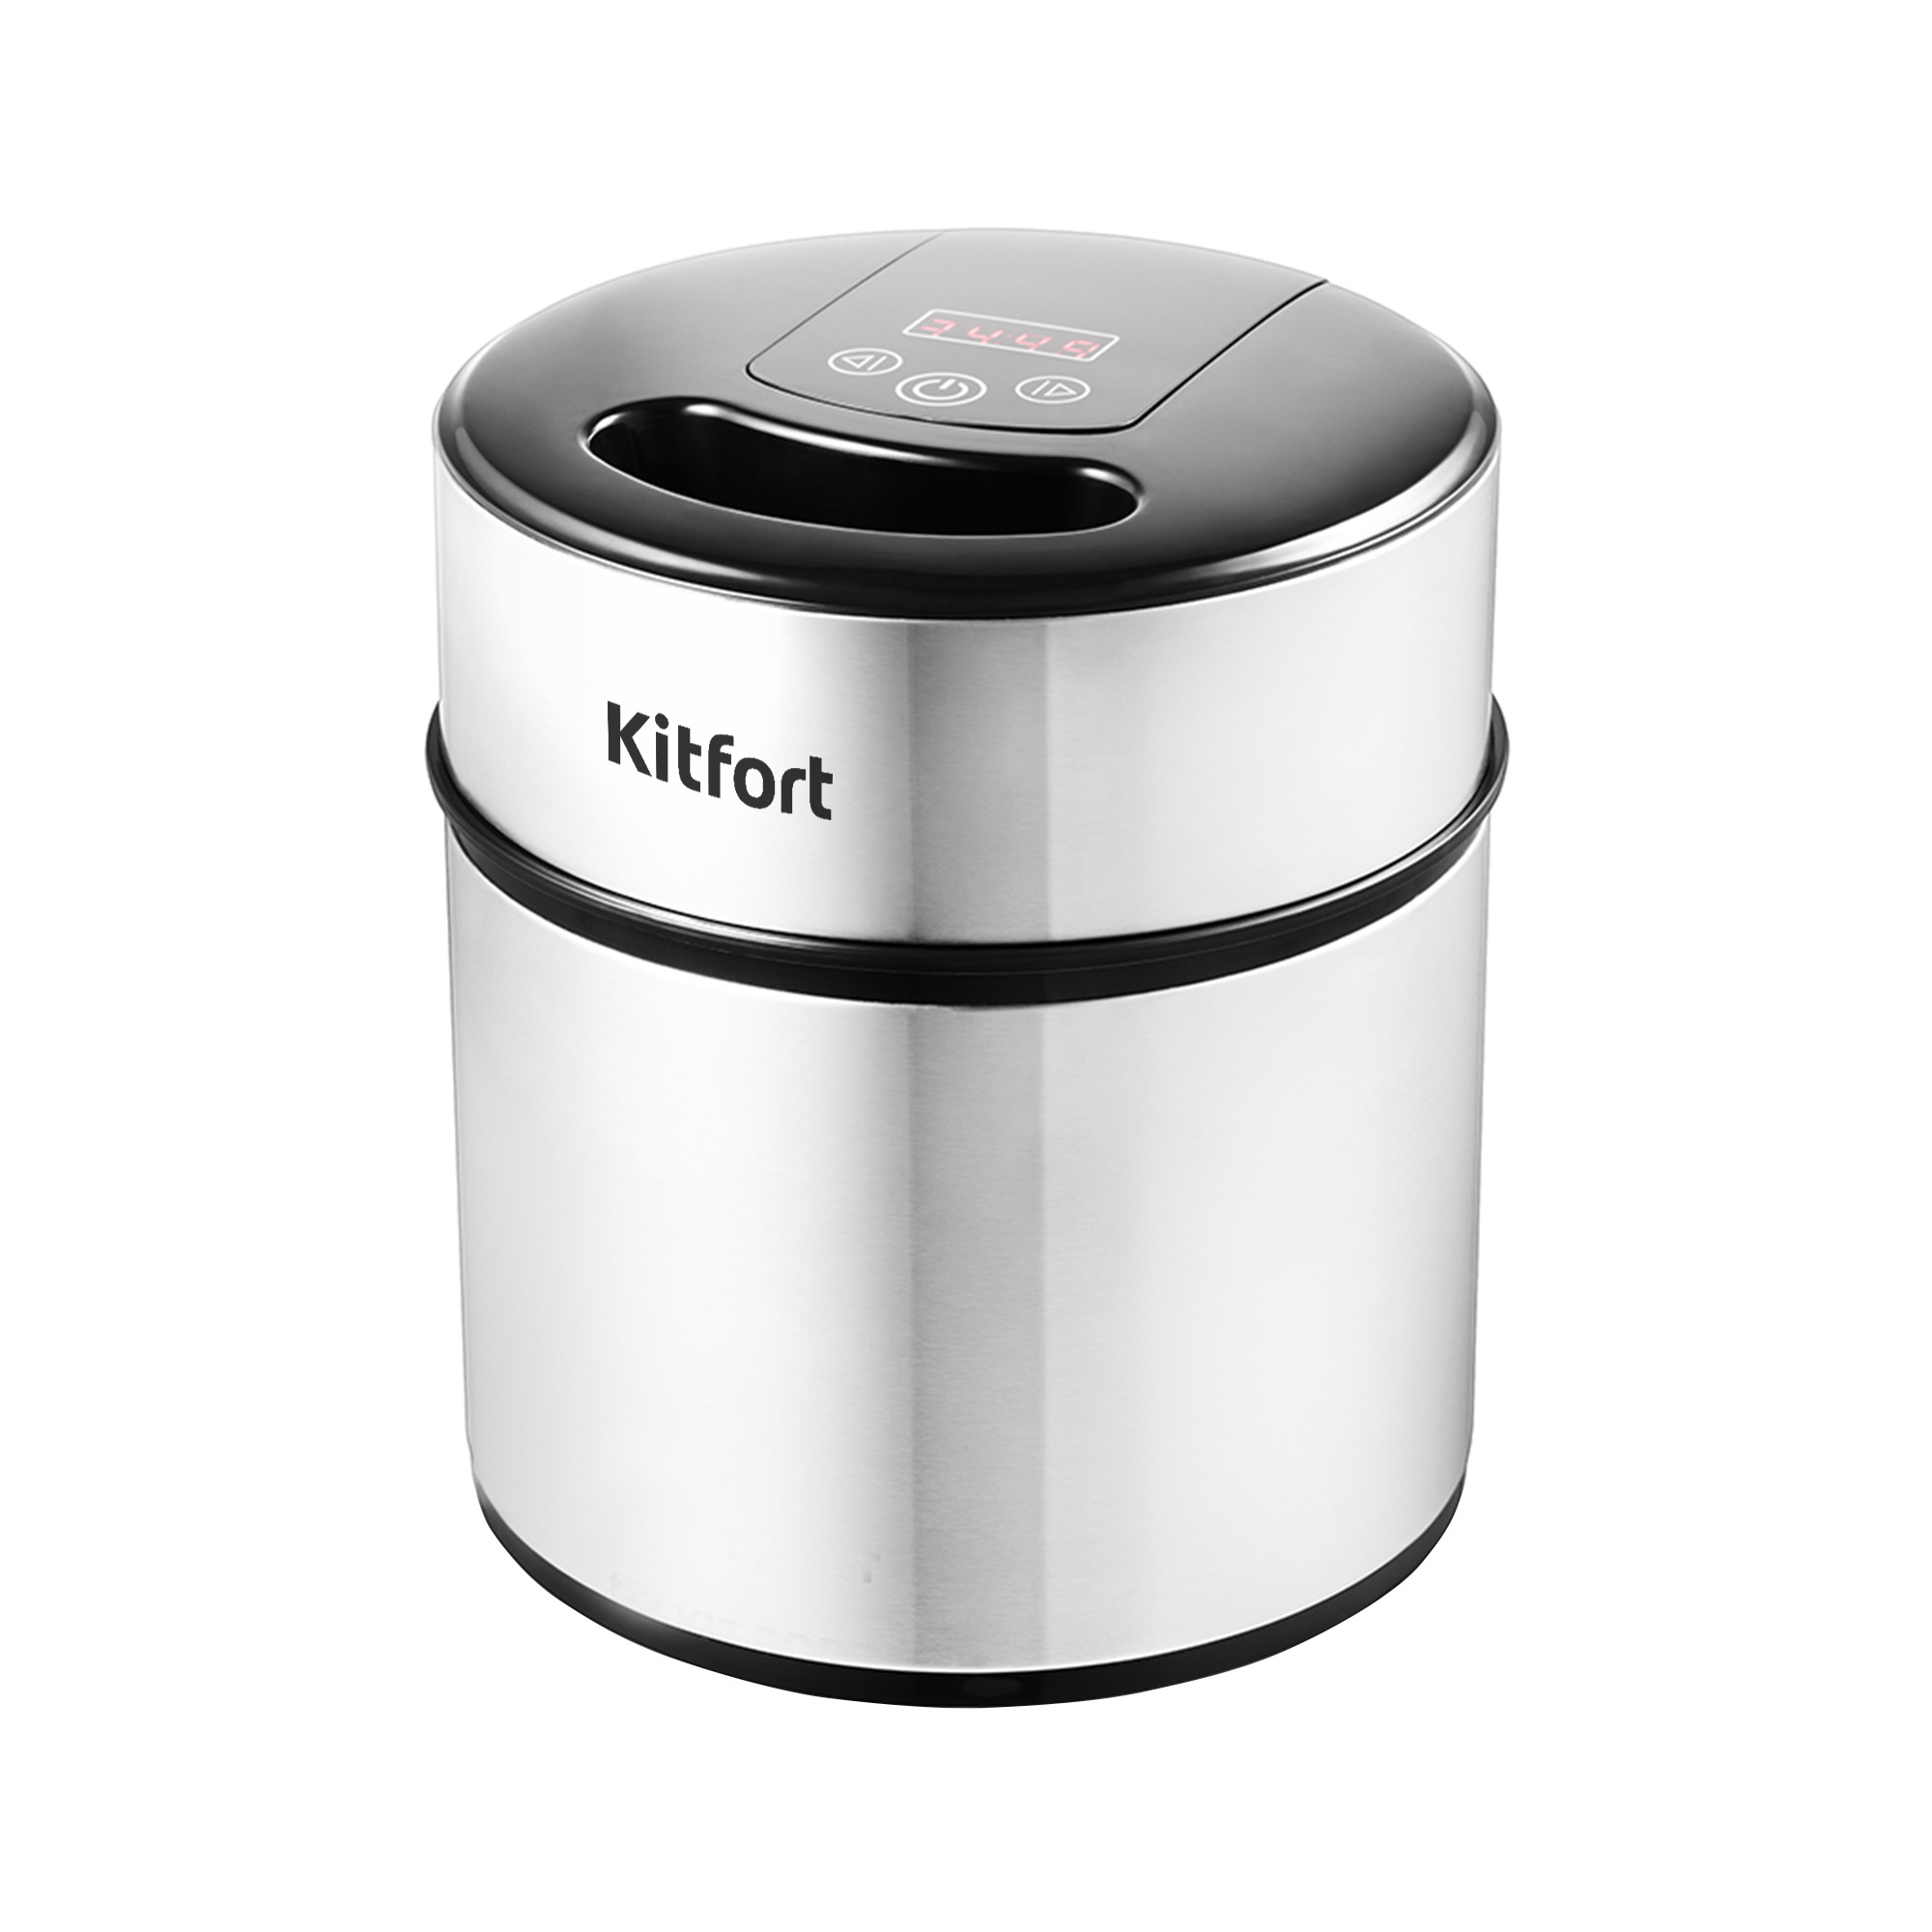 Мороженица Kitfort KT-1804, серебристый/черный